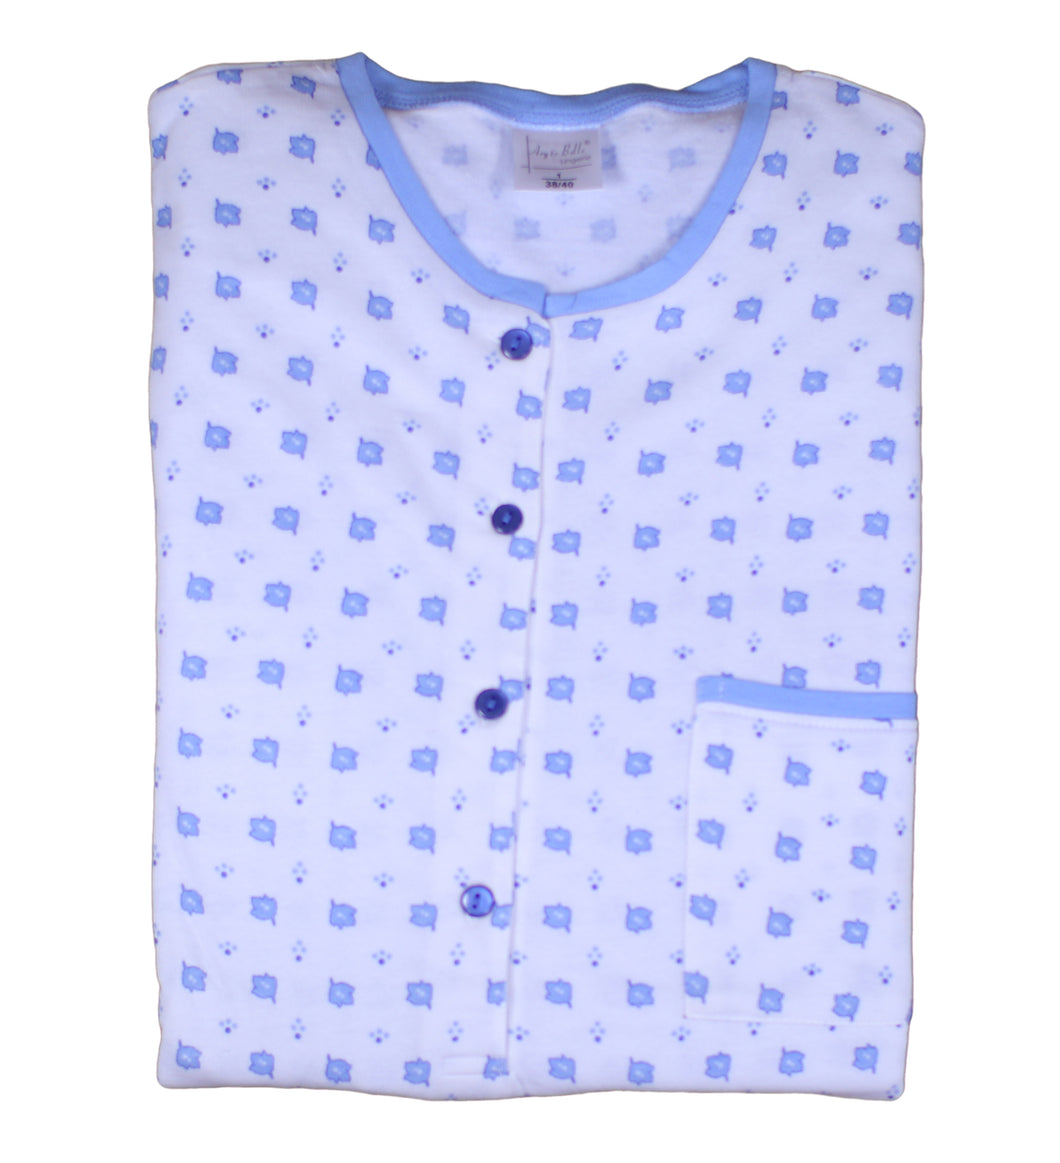 Ladies 100% Cotton Leaf & Polka Dot Pattern Pyjamas Set S - XL (Blue or Pink)